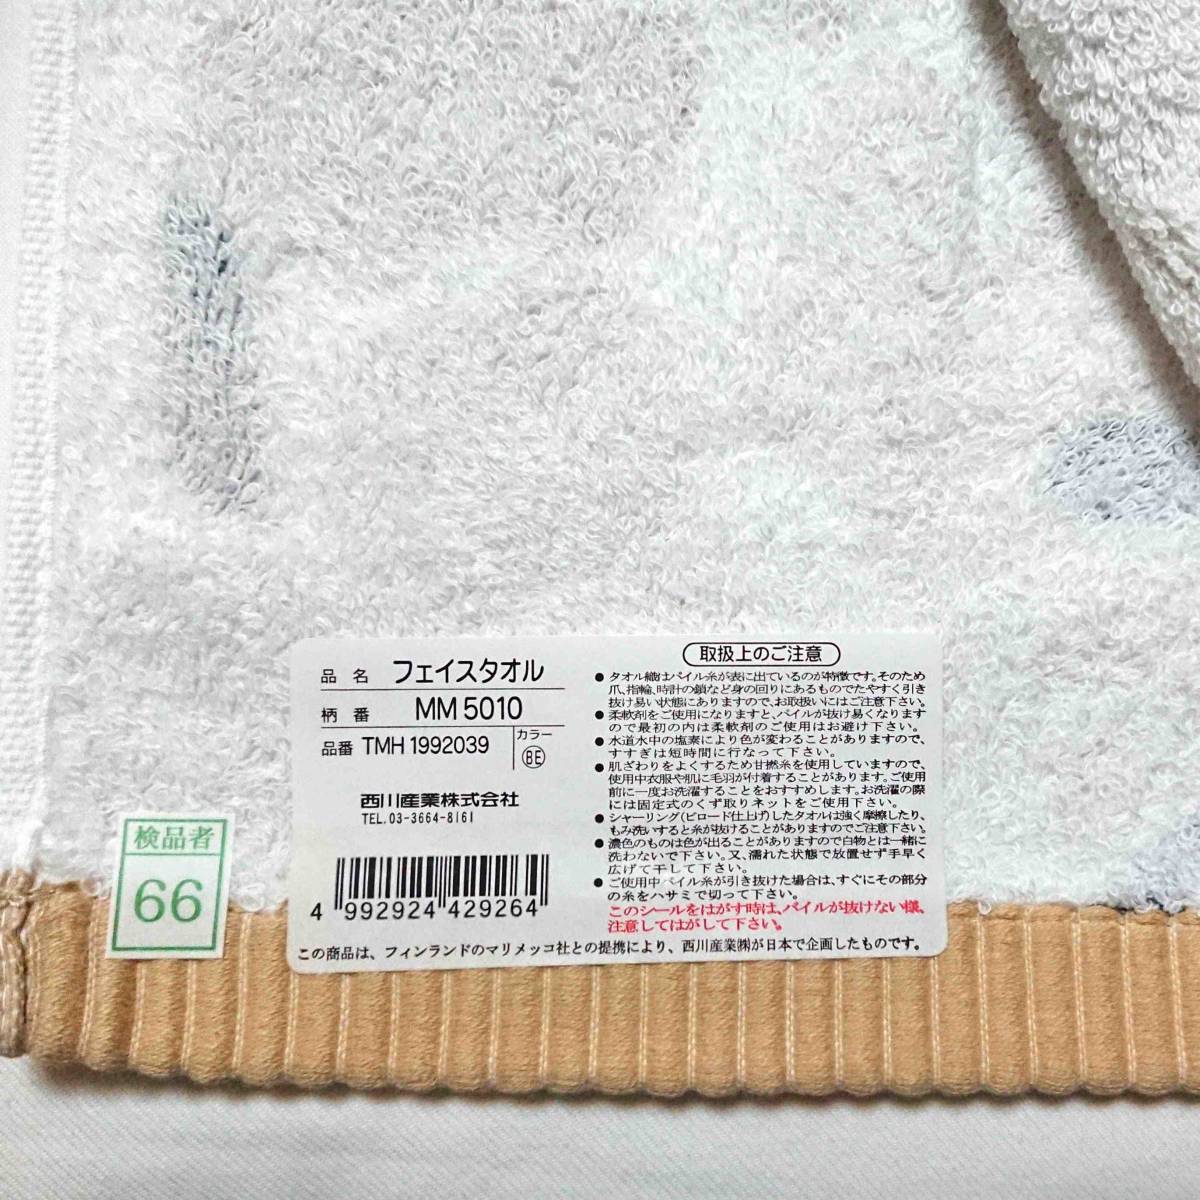  Marimekko морской еж ko полотенце для лица marimekko unikko бежевый сделано в Японии новый товар не использовался 